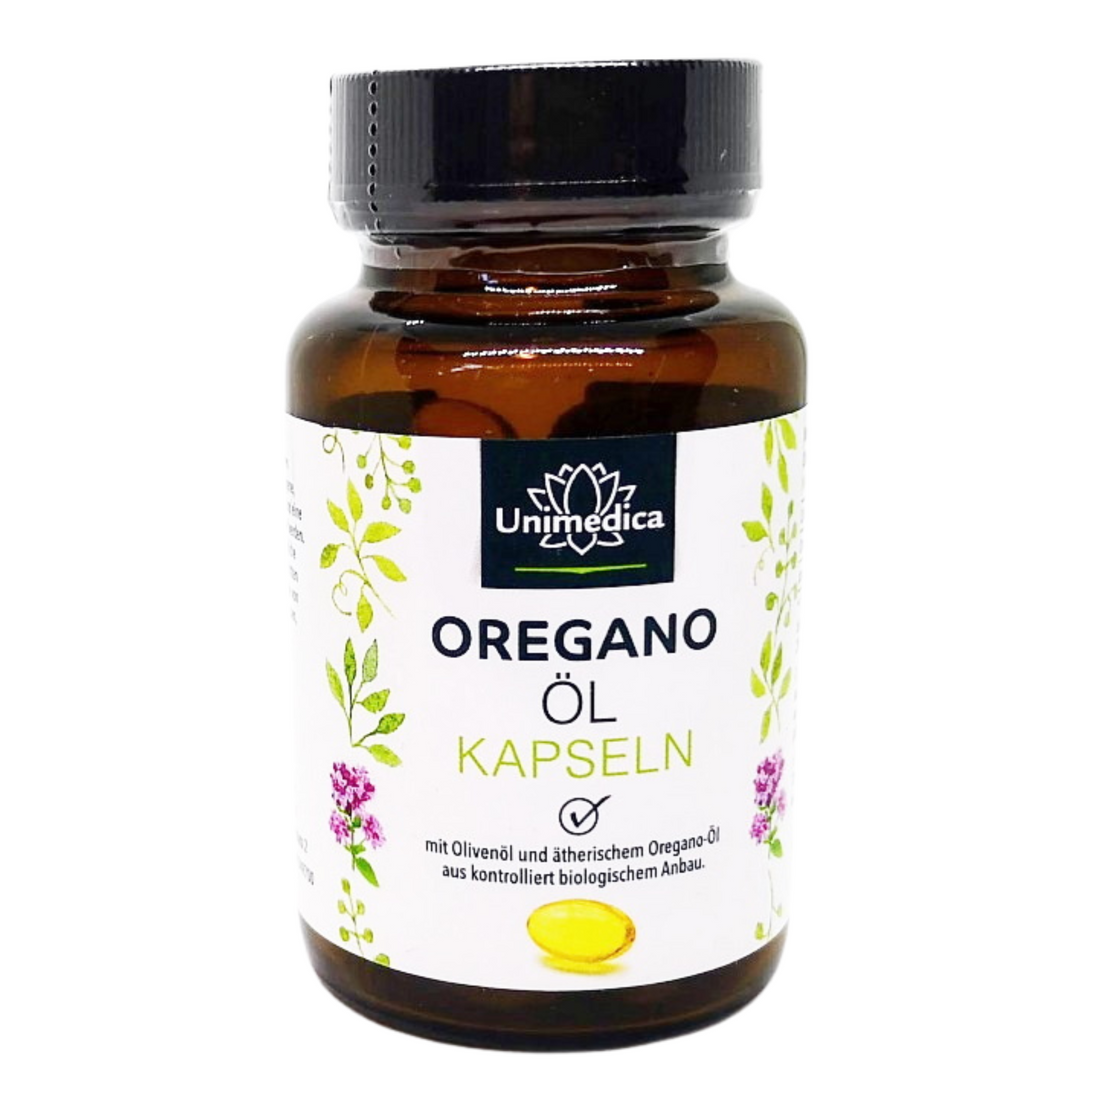 Nahrungsergänzungsmittel mit ätherischem Bio Oregano-Öl und Olivenöl aus kontrolliert biologischem Anbau. Immunsystem Kornkammer Natur Unimedica